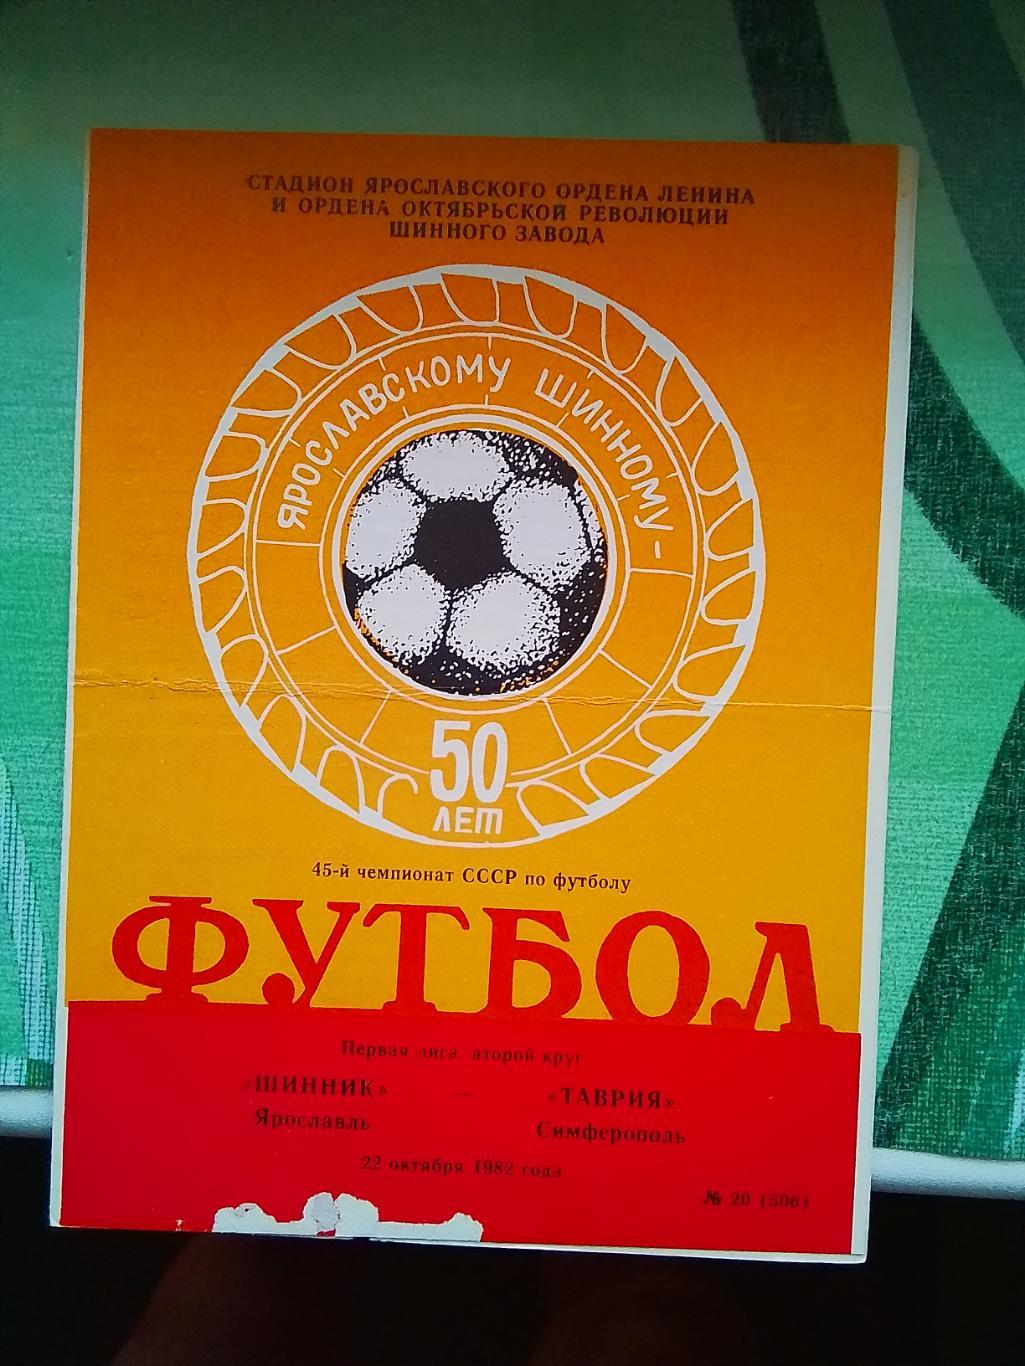 Шинник Ярославль - Таврия Симферополь 1982